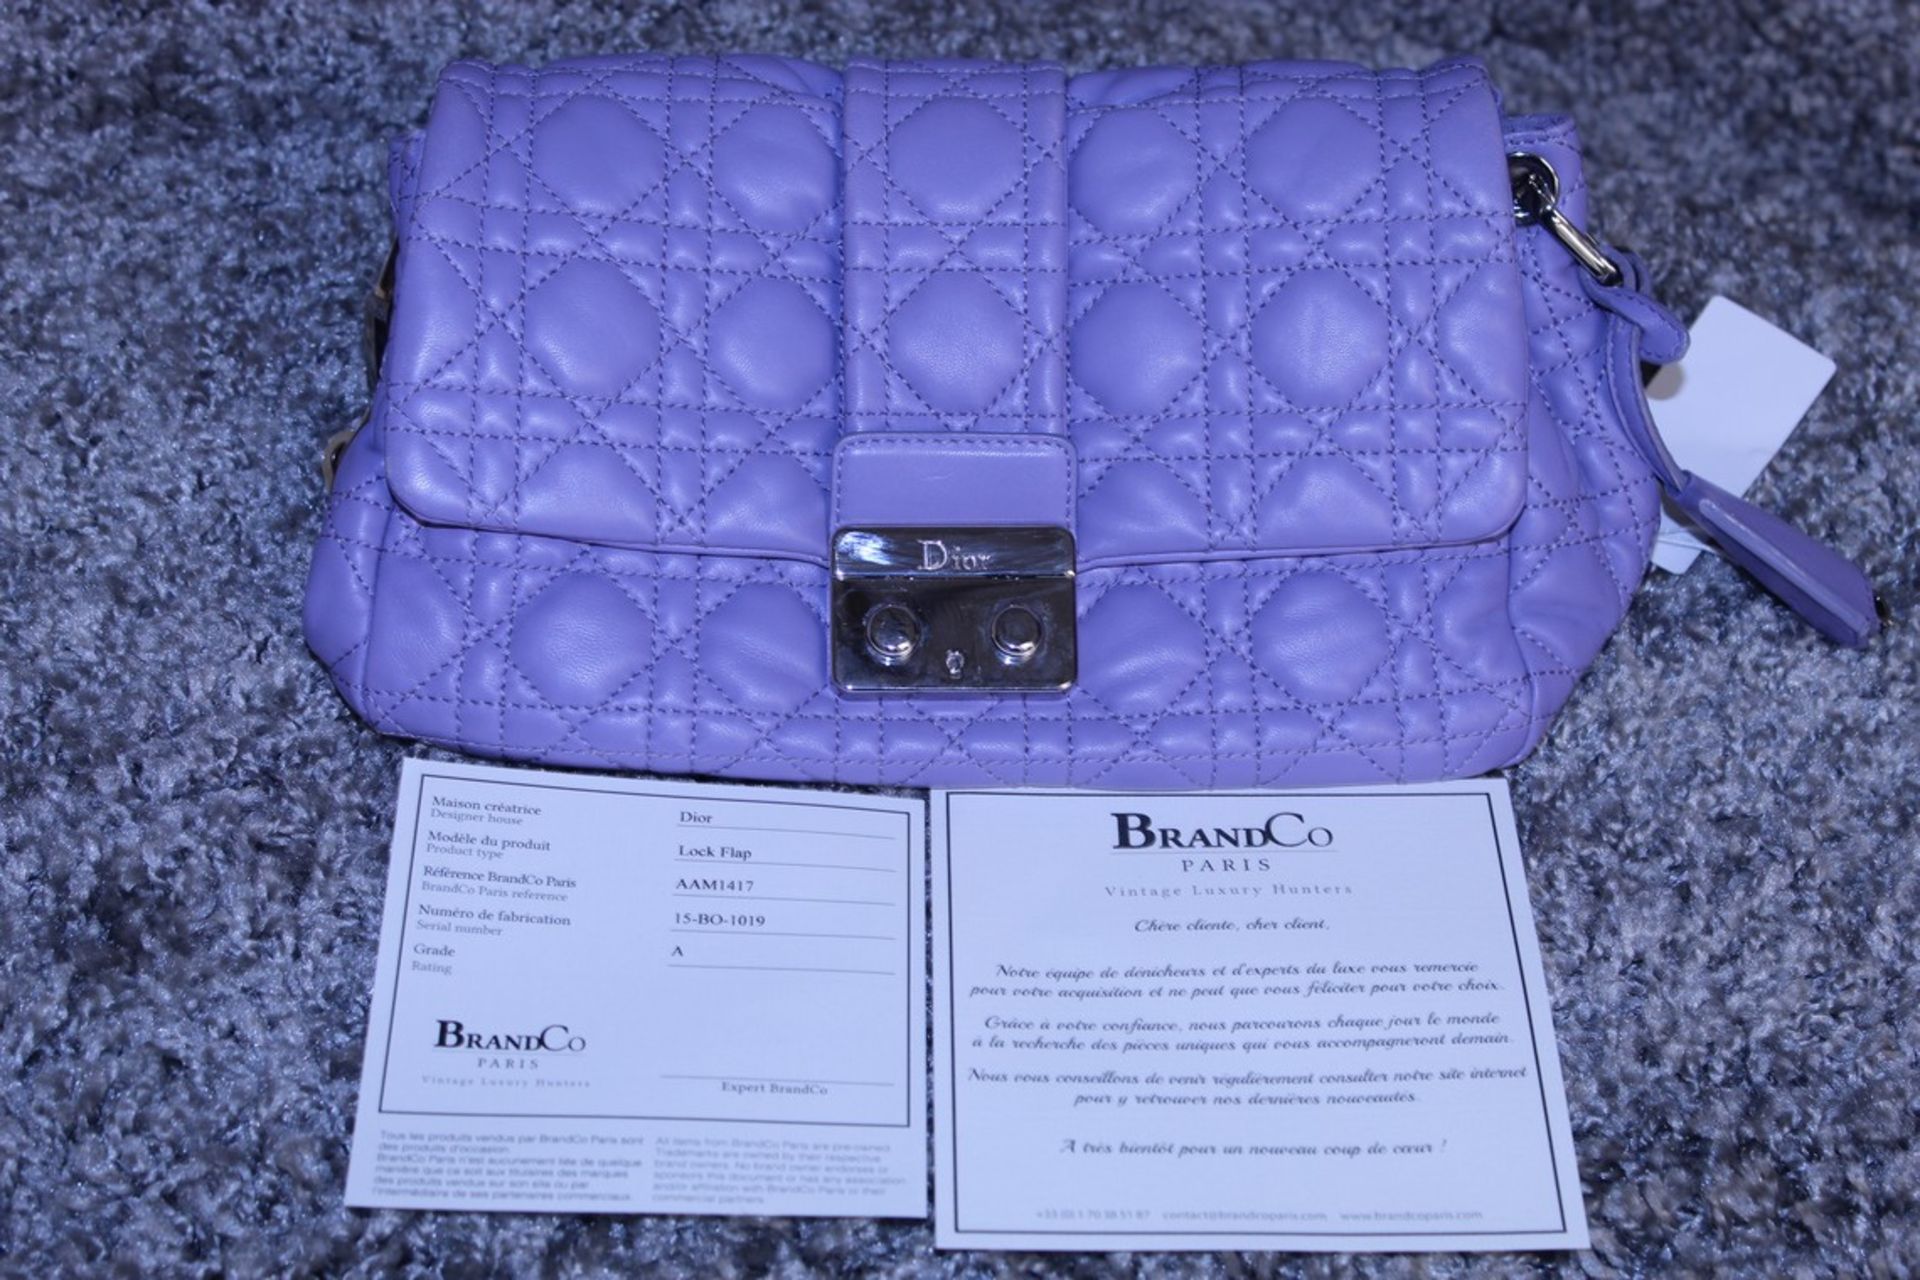 RRP £1,700 Dior Violet Lock Flap Shoulder Bag, Calf Leather, Violet Leather Straps, 24X17X12Cm ( - Image 3 of 3